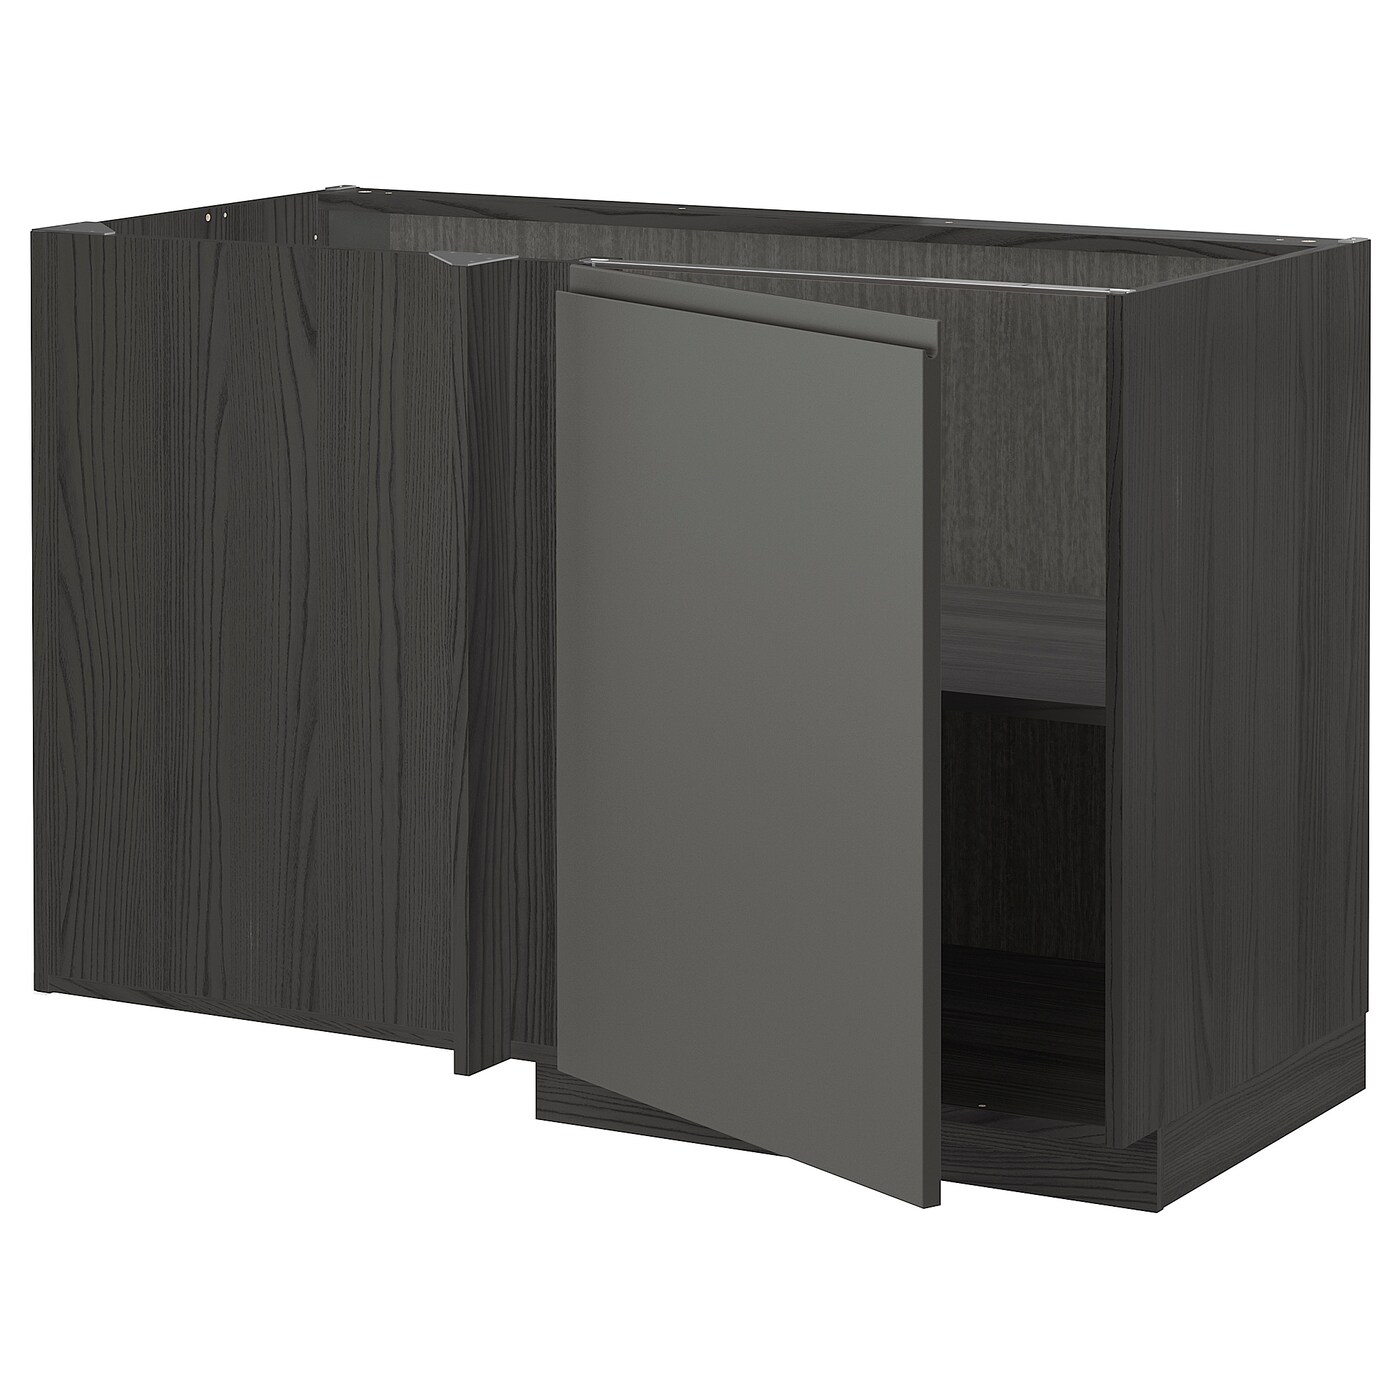 Напольный кухонный шкаф  - IKEA METOD, 62x67,5x127,5см, темно-серый, МЕТОД ИКЕА